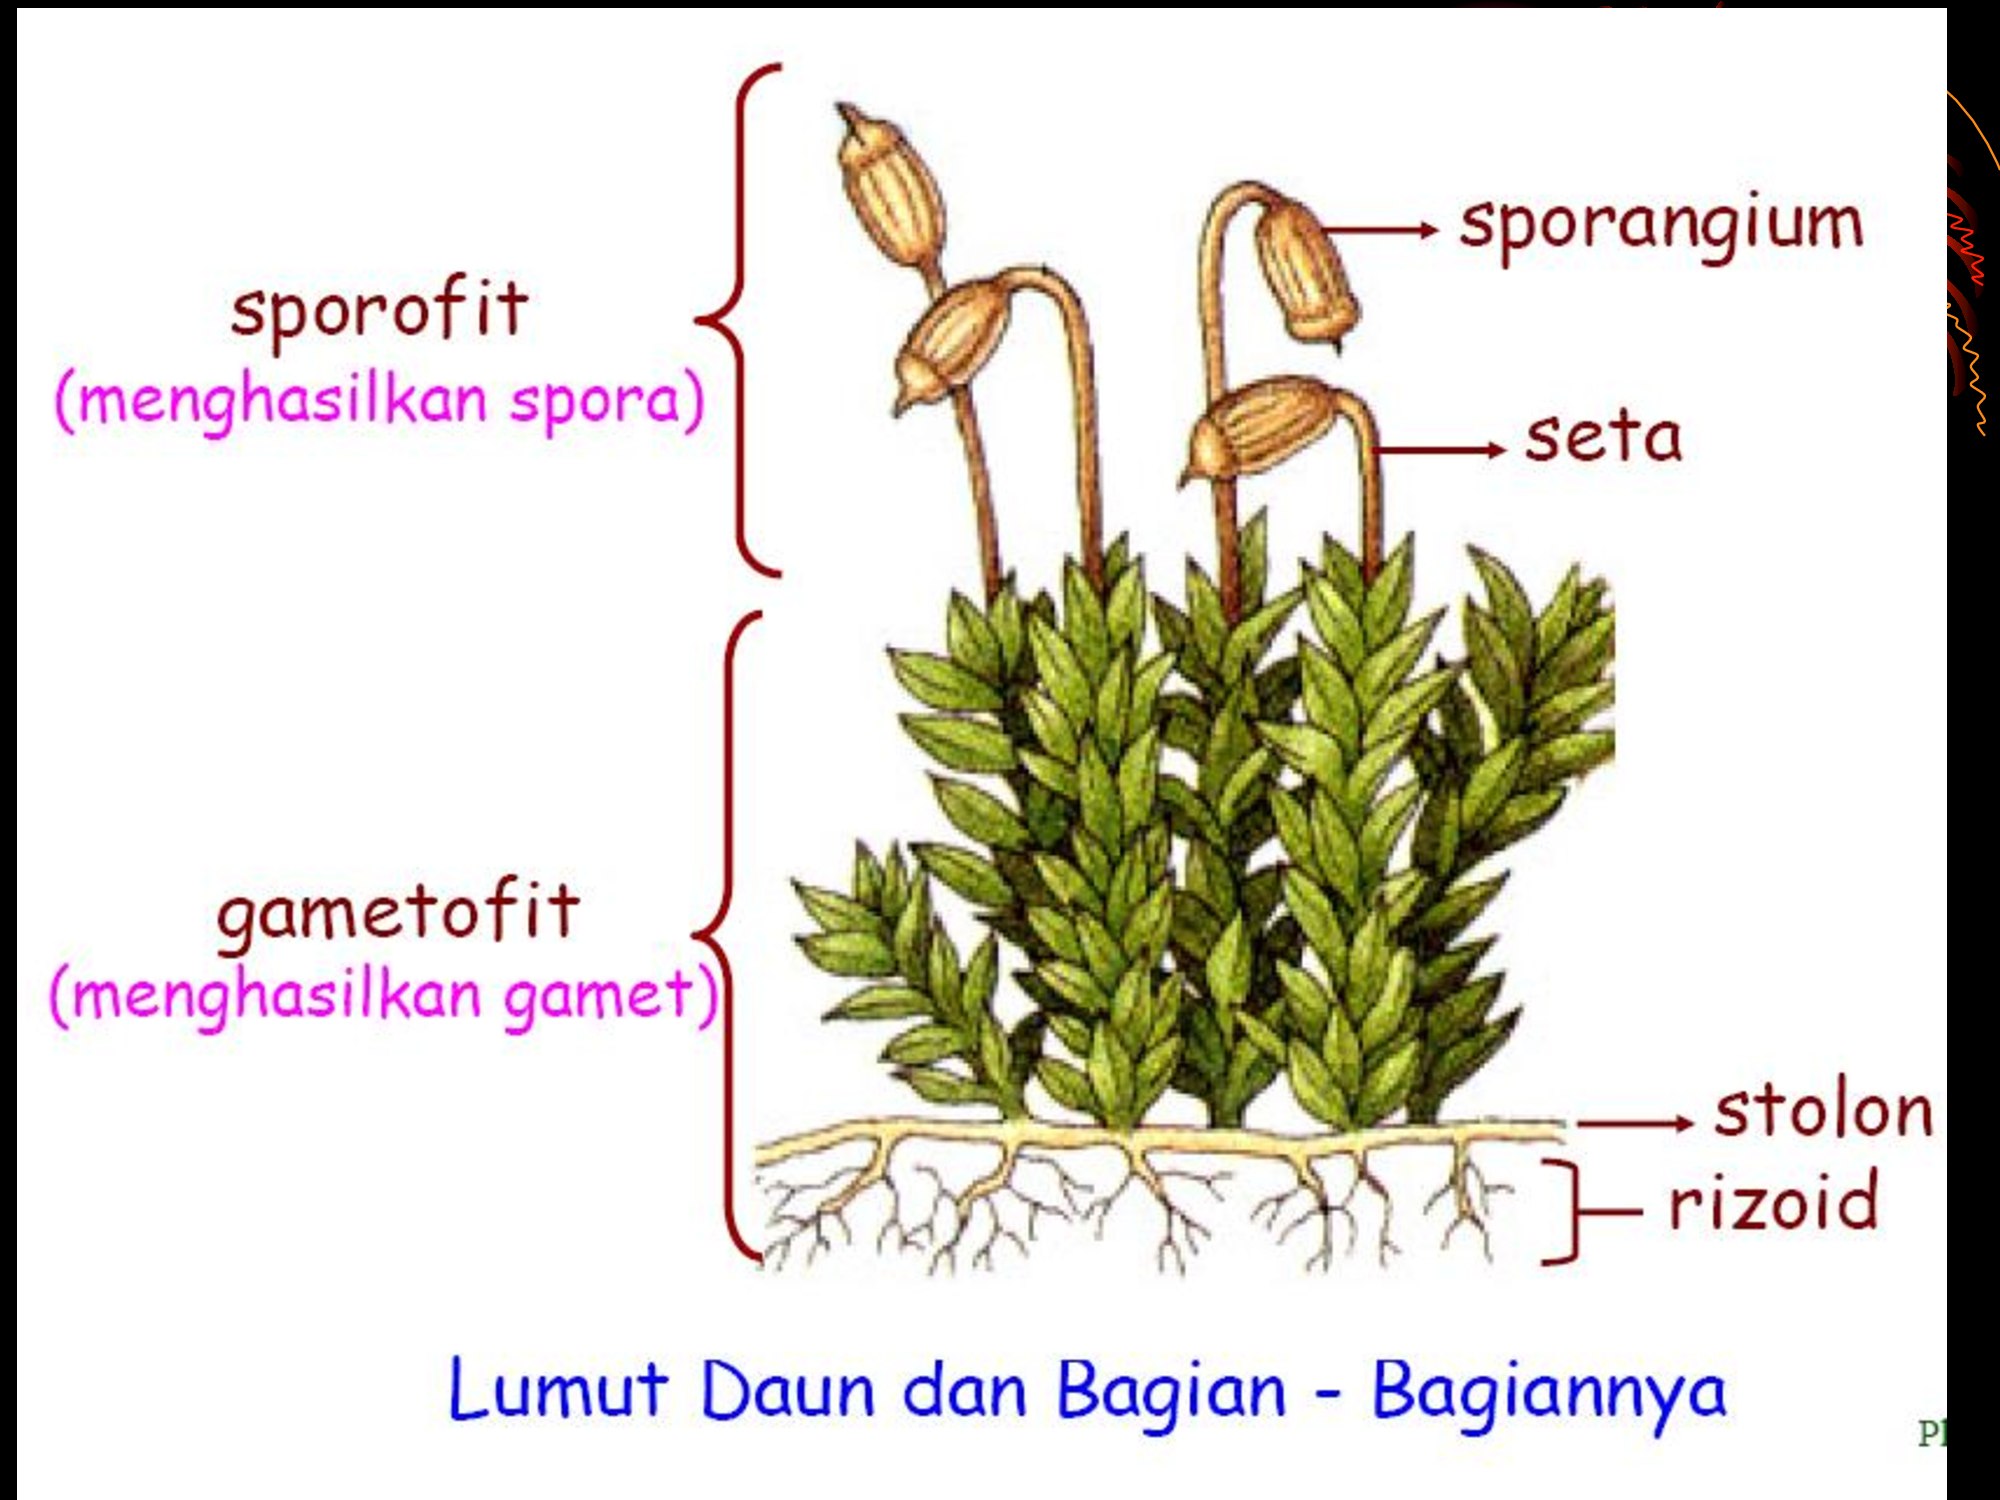 Спорофиты моховидных растений